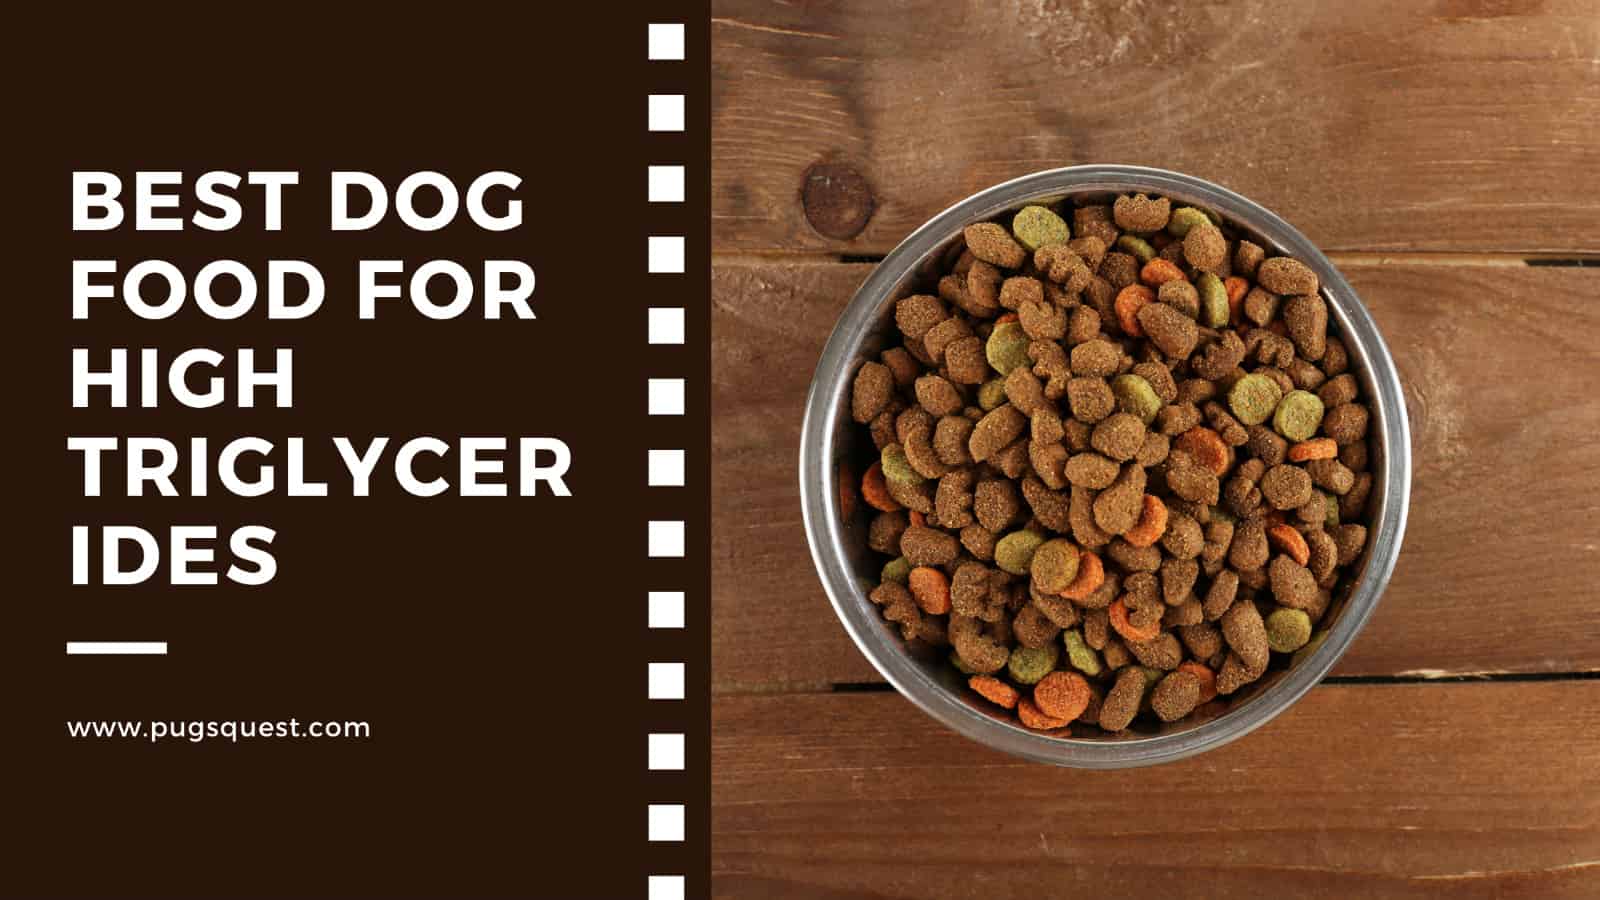 Best Dog Food for High Triglycerides